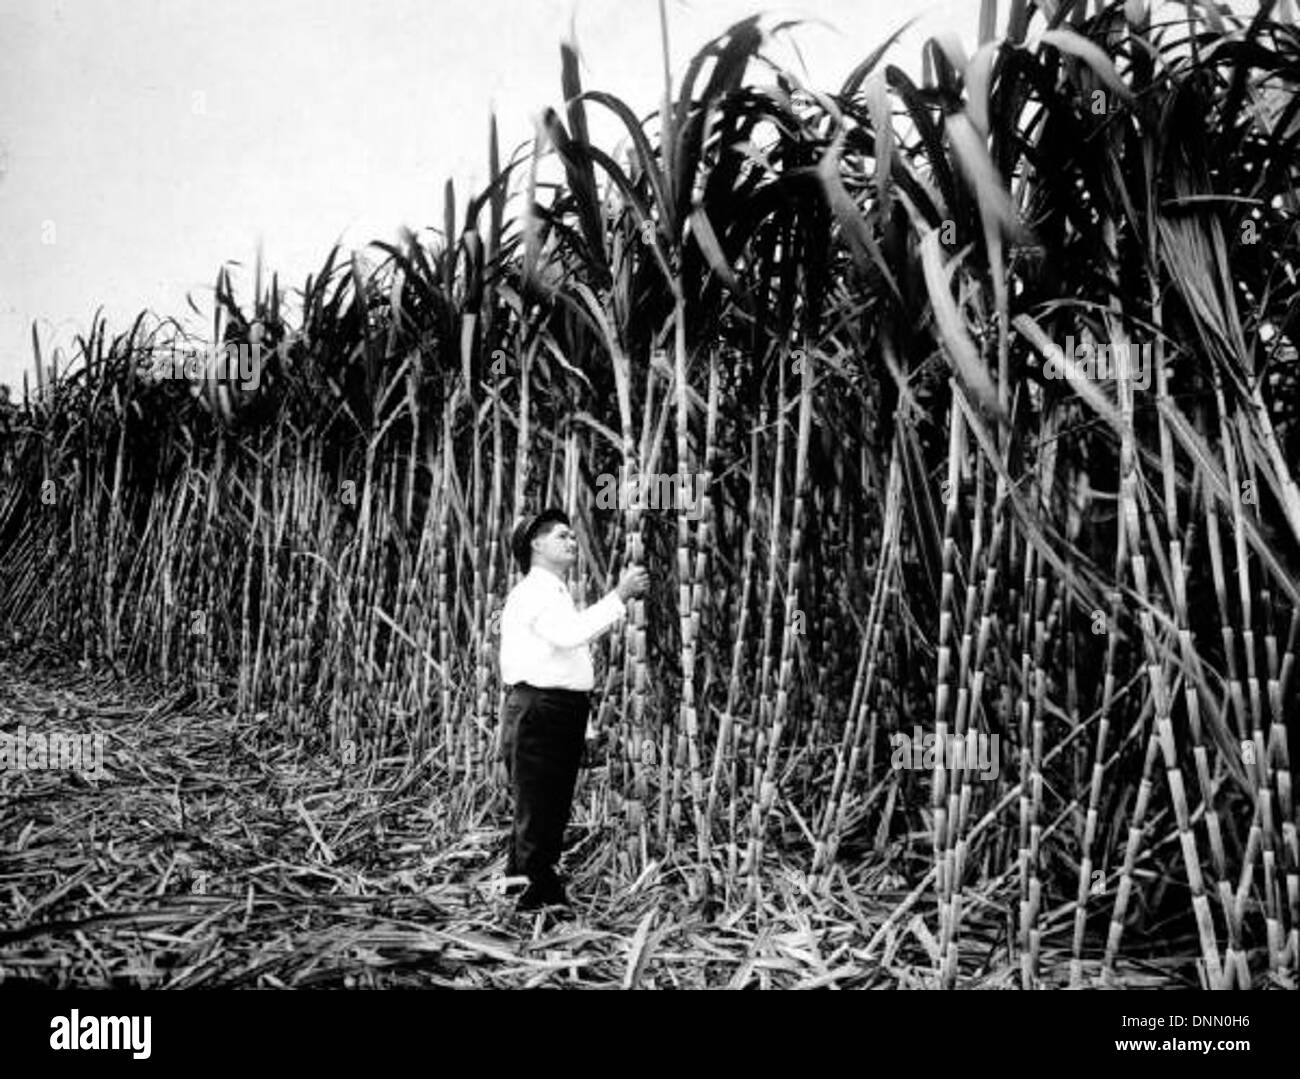 Sugarcane growing near Tampa, Florida Stock Photo